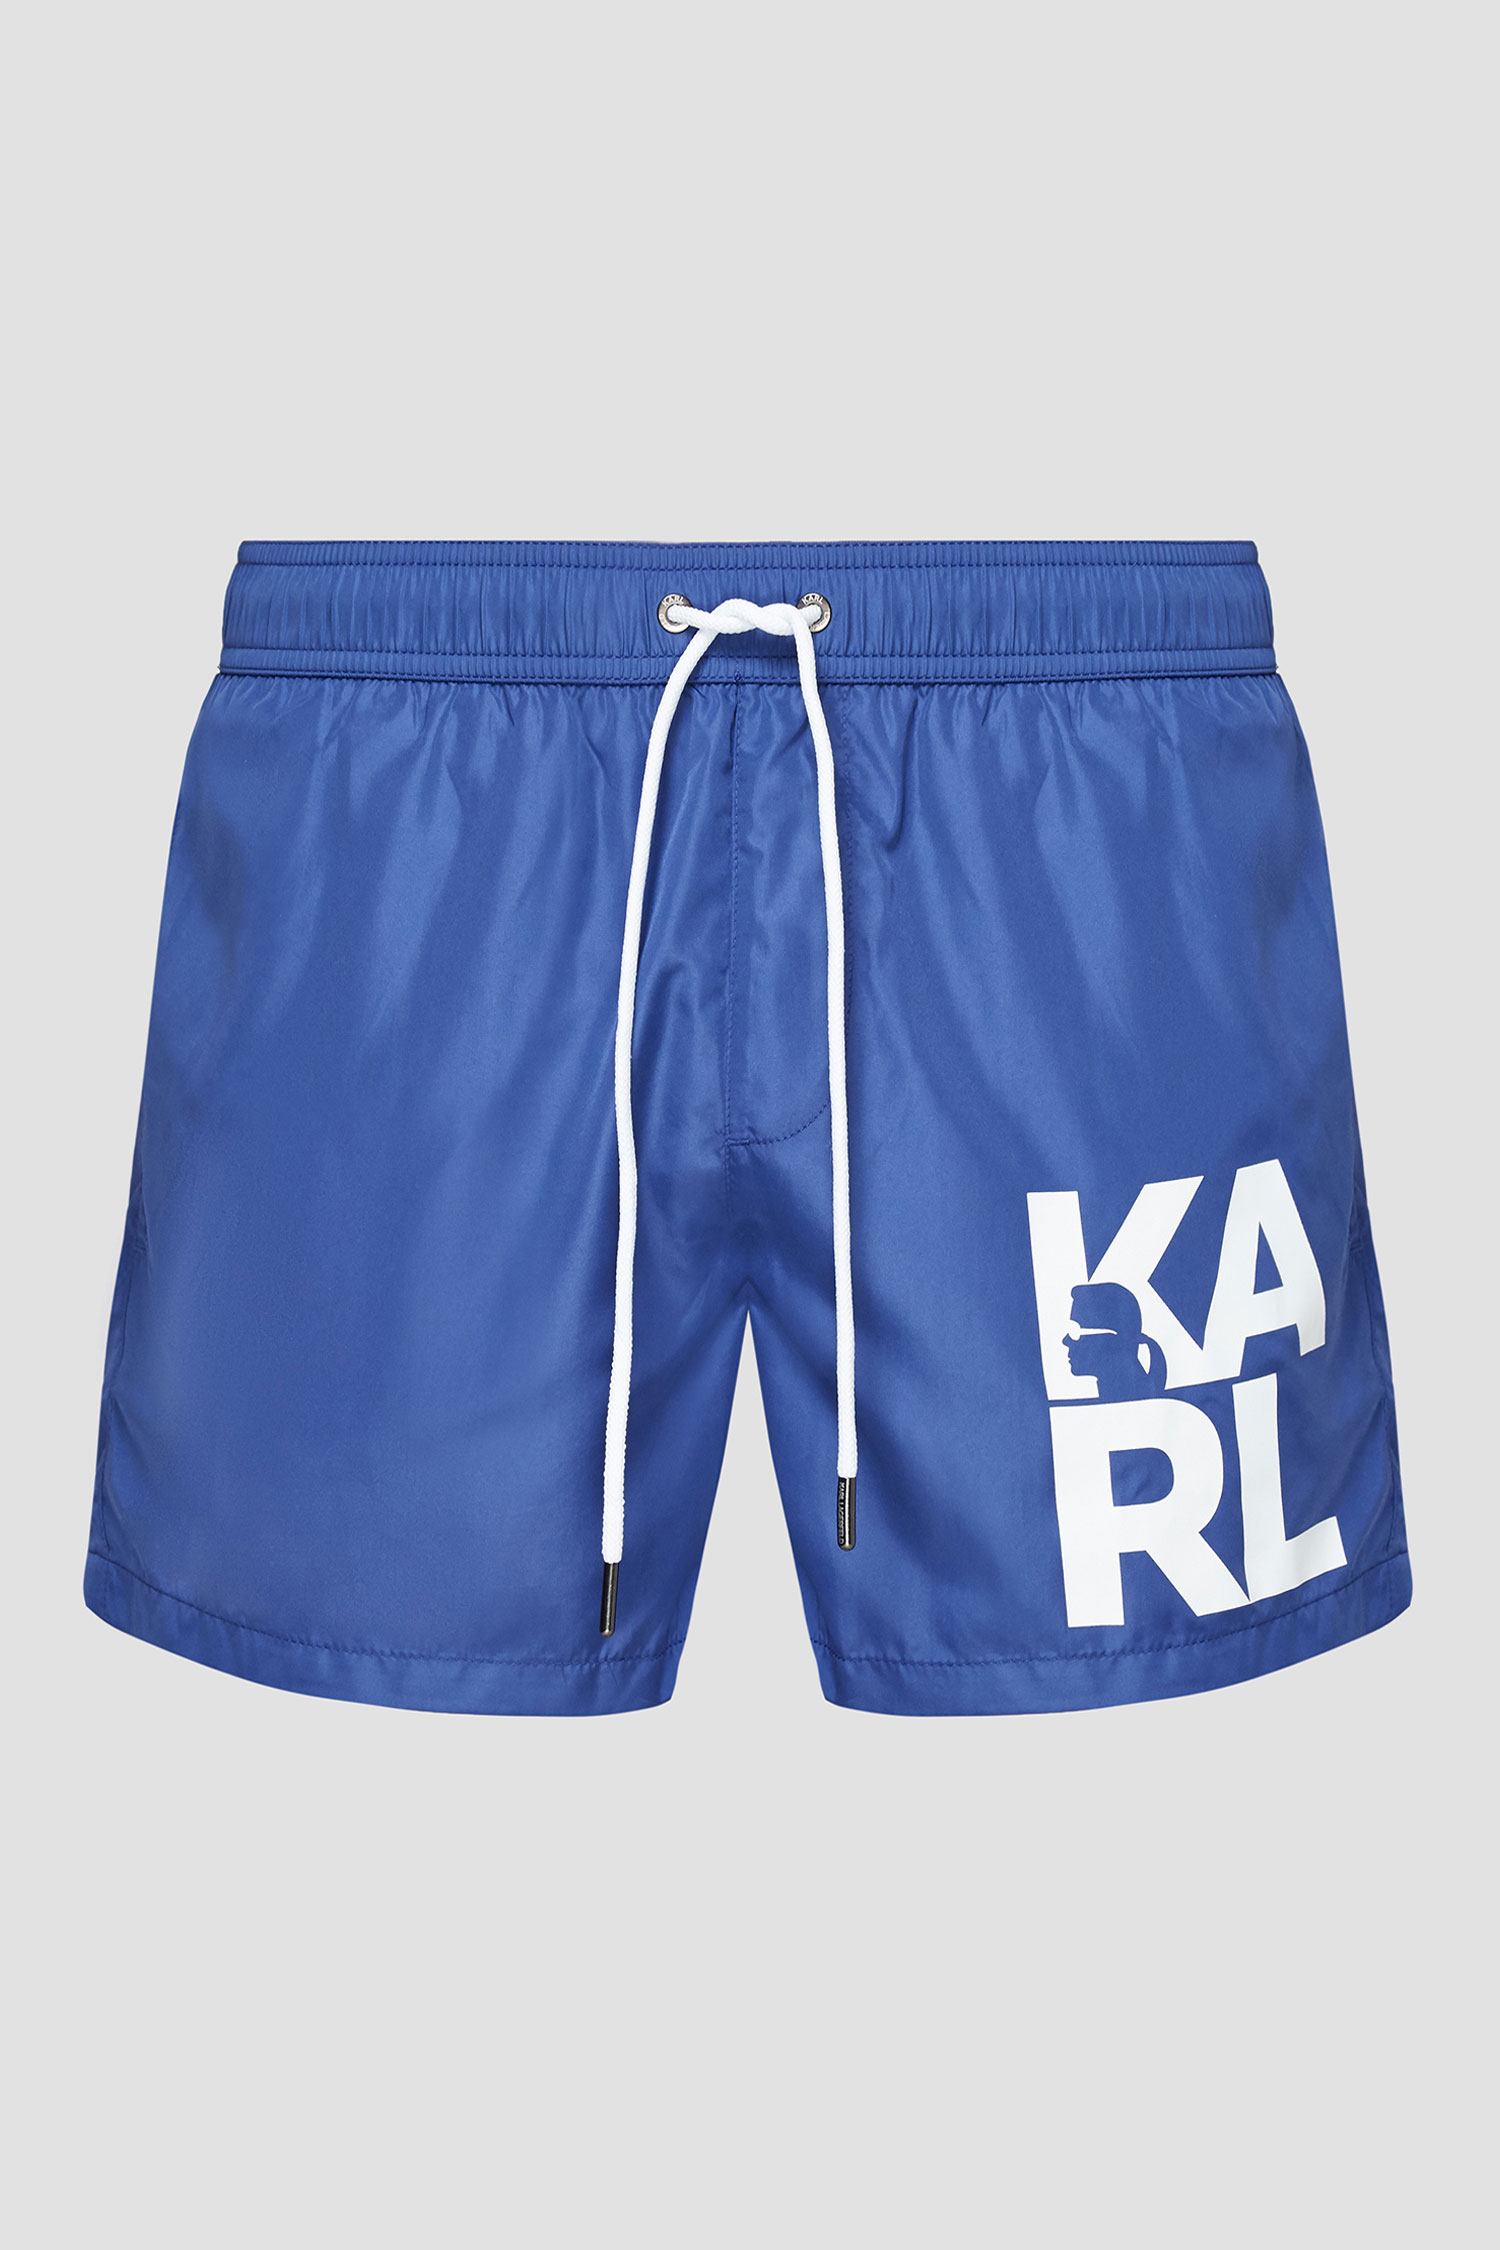 Синие плавательные шорты для парней Karl Lagerfeld KL21MBS02;NAVY